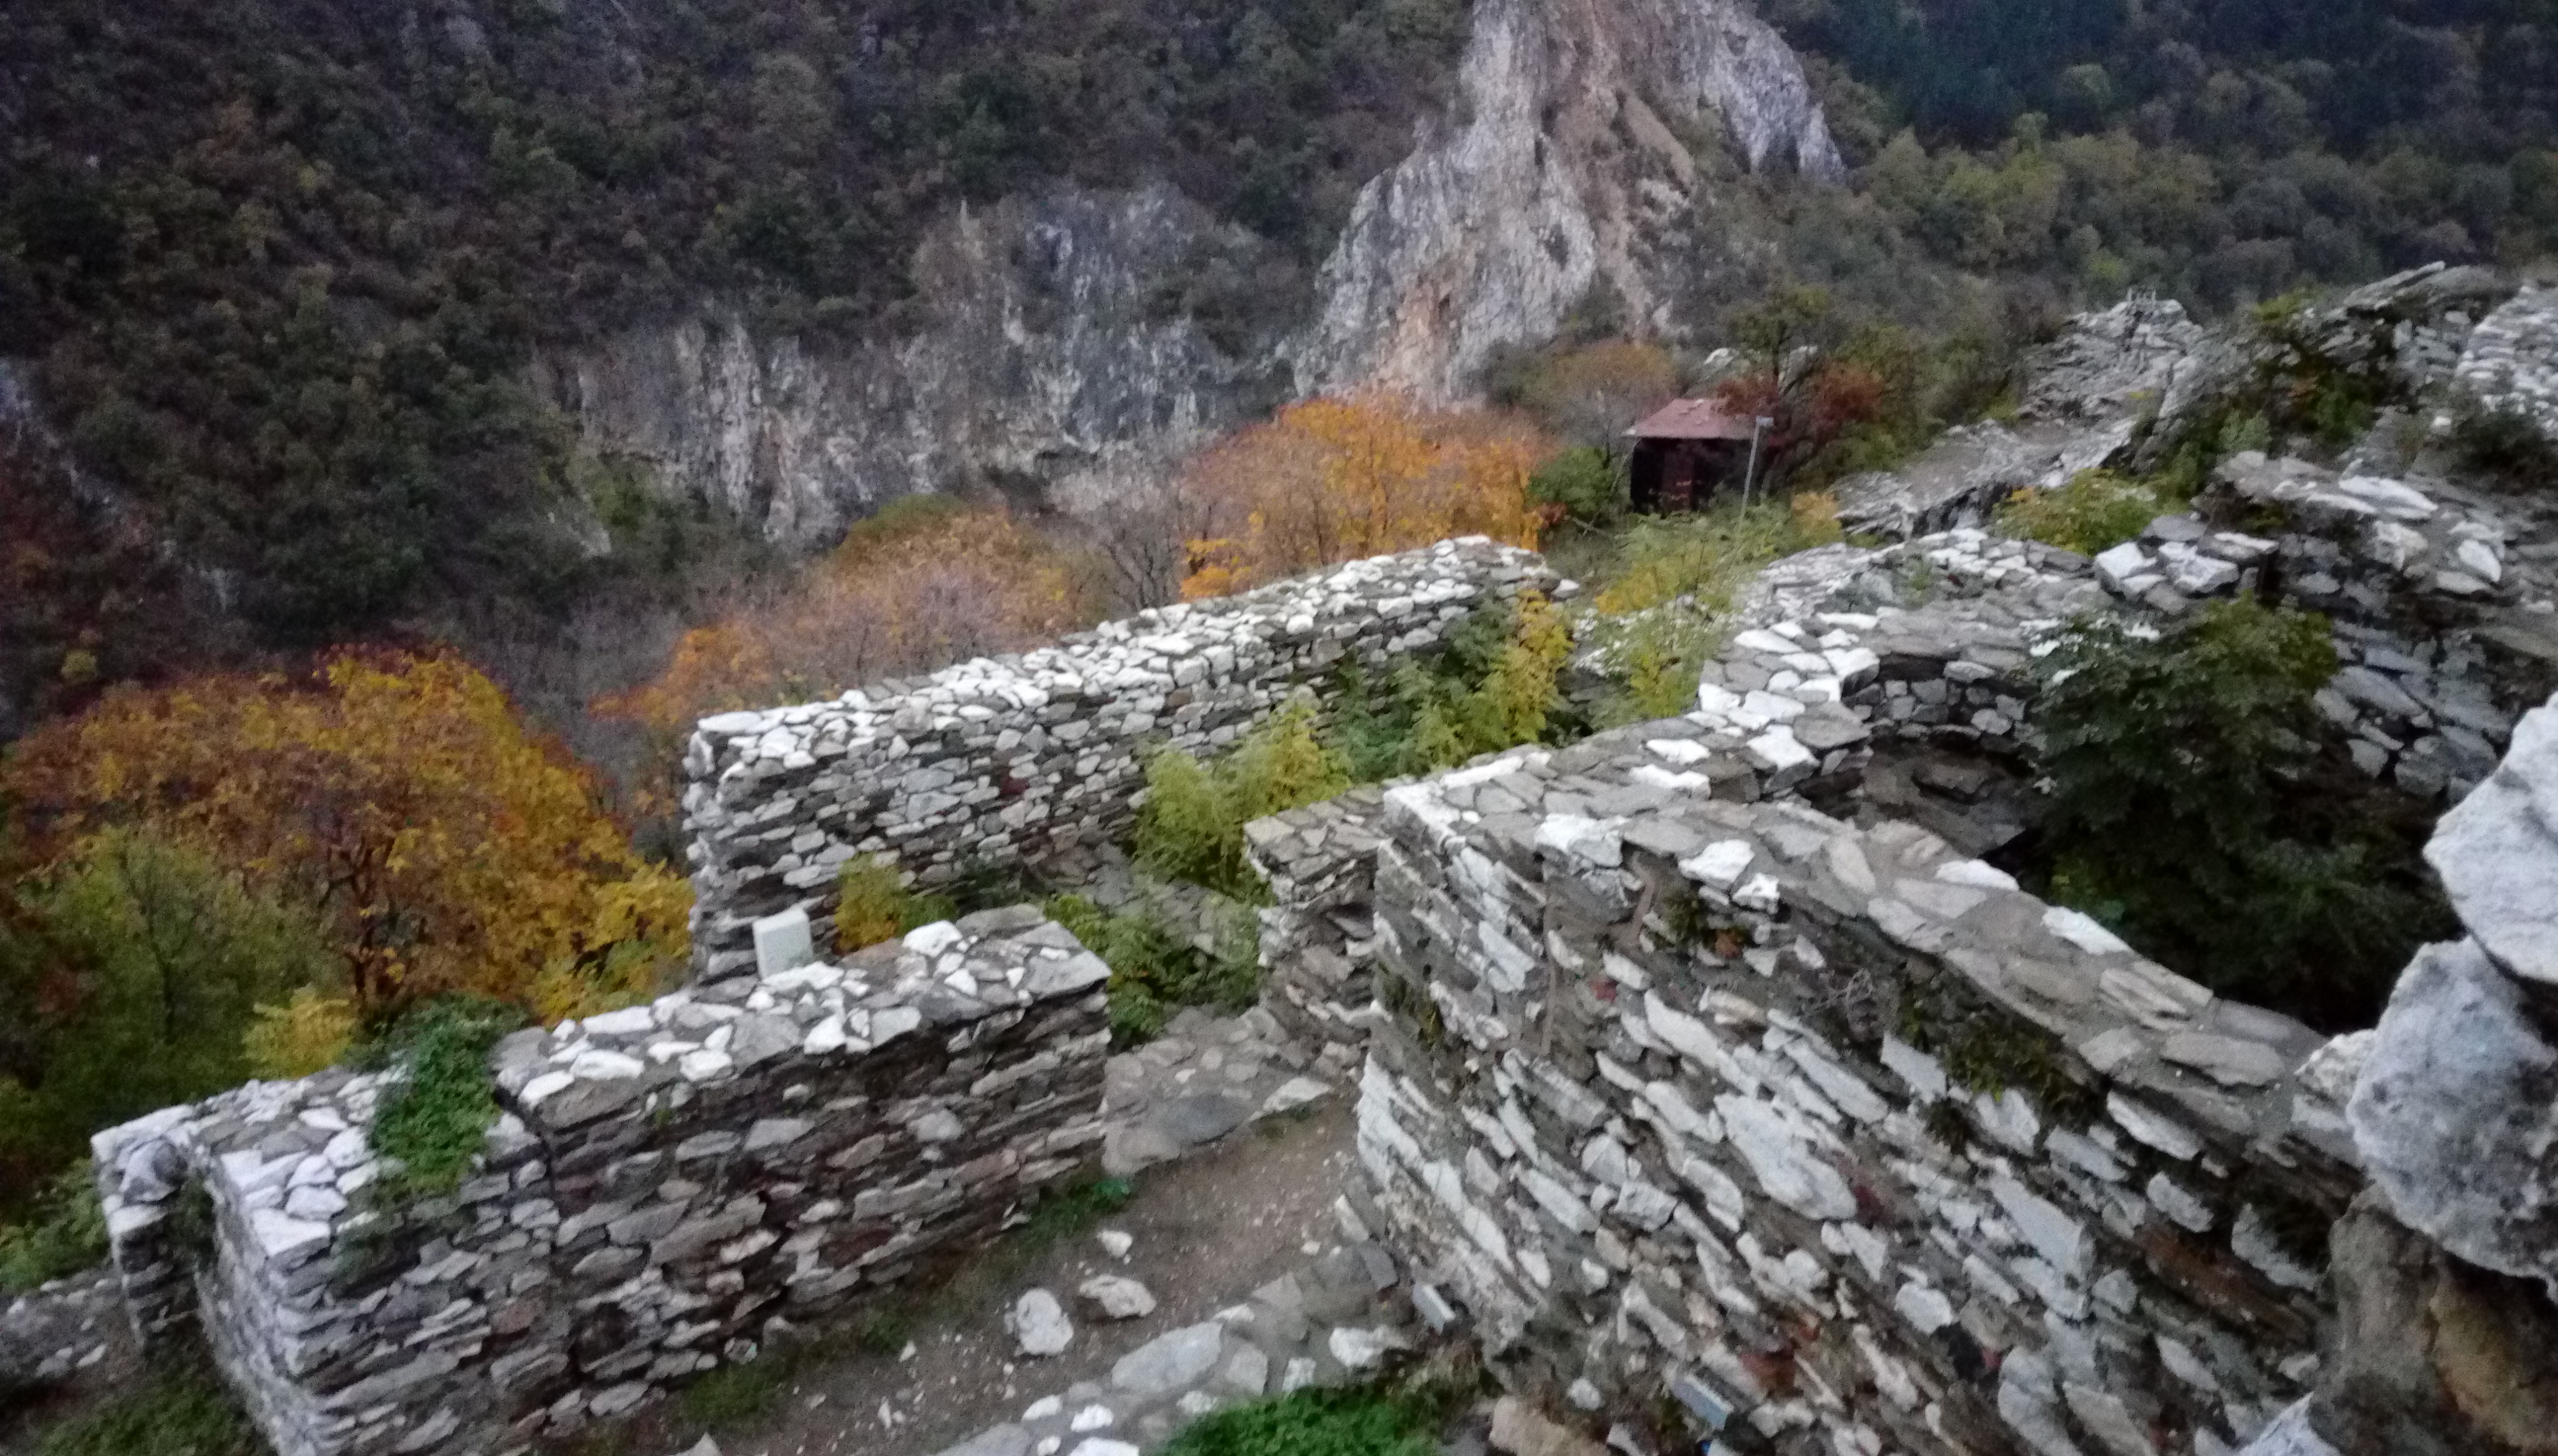 Асеновата крепост - средновековният диамант на България